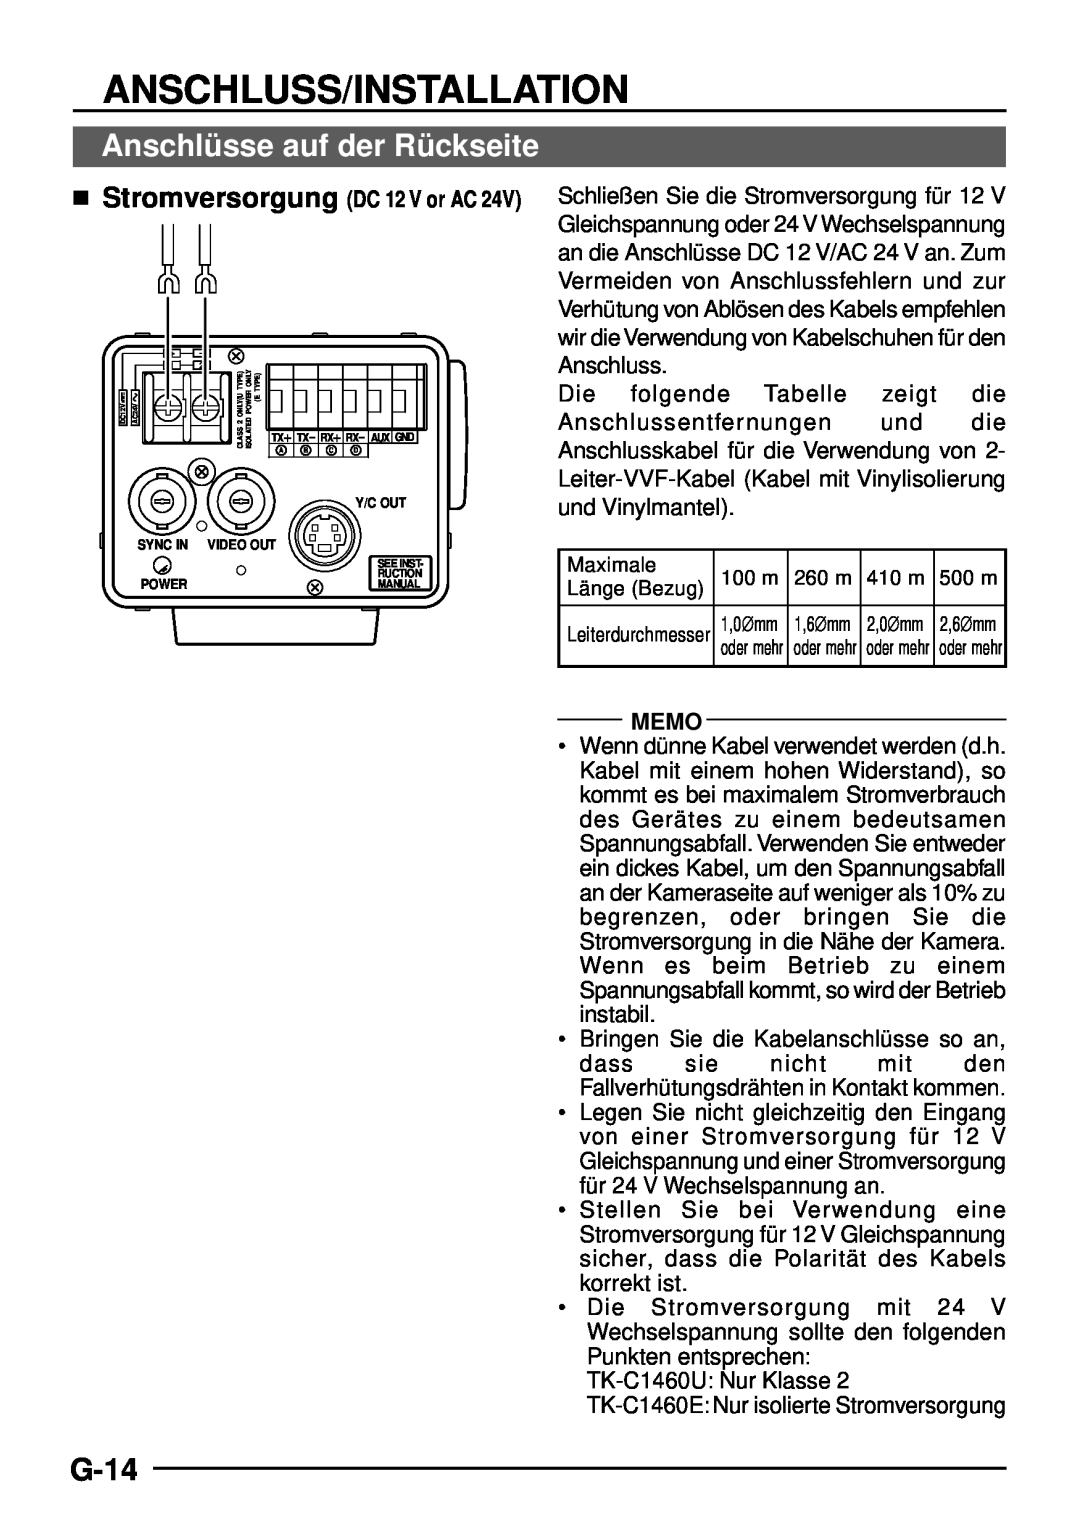 JVC TK-C1460 manual Anschlü sse auf der Rü ckseite, G-14, Anschluss/Installation, Memo,  Stromversorgung DC 12 V or AC 